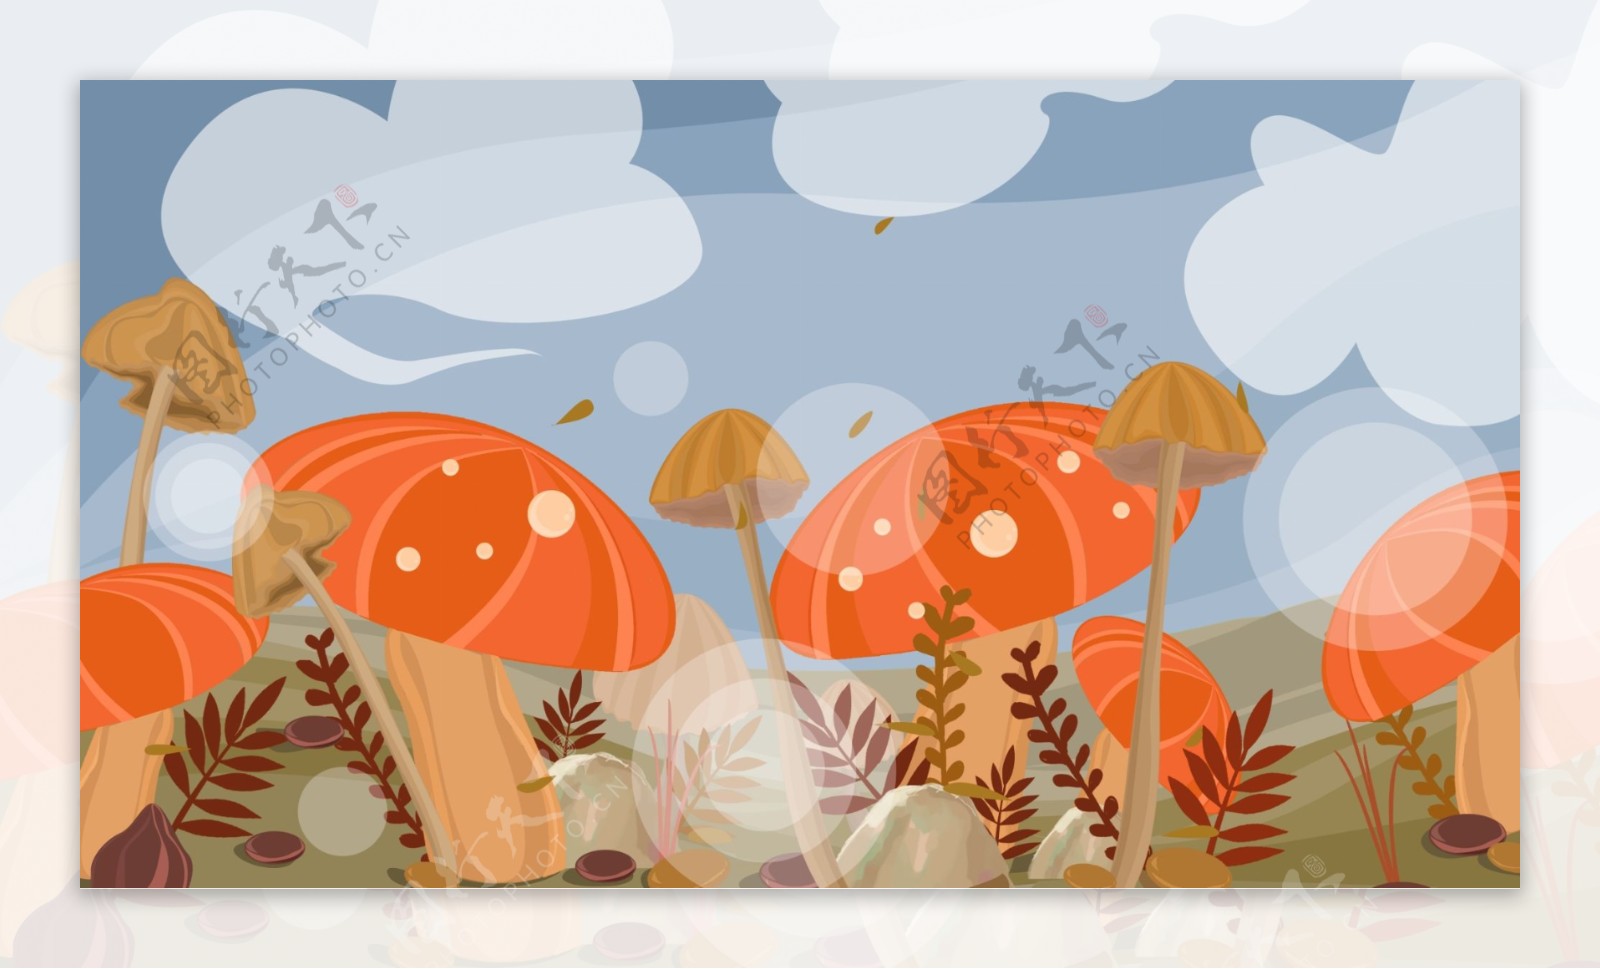 彩绘可爱蘑菇背景设计